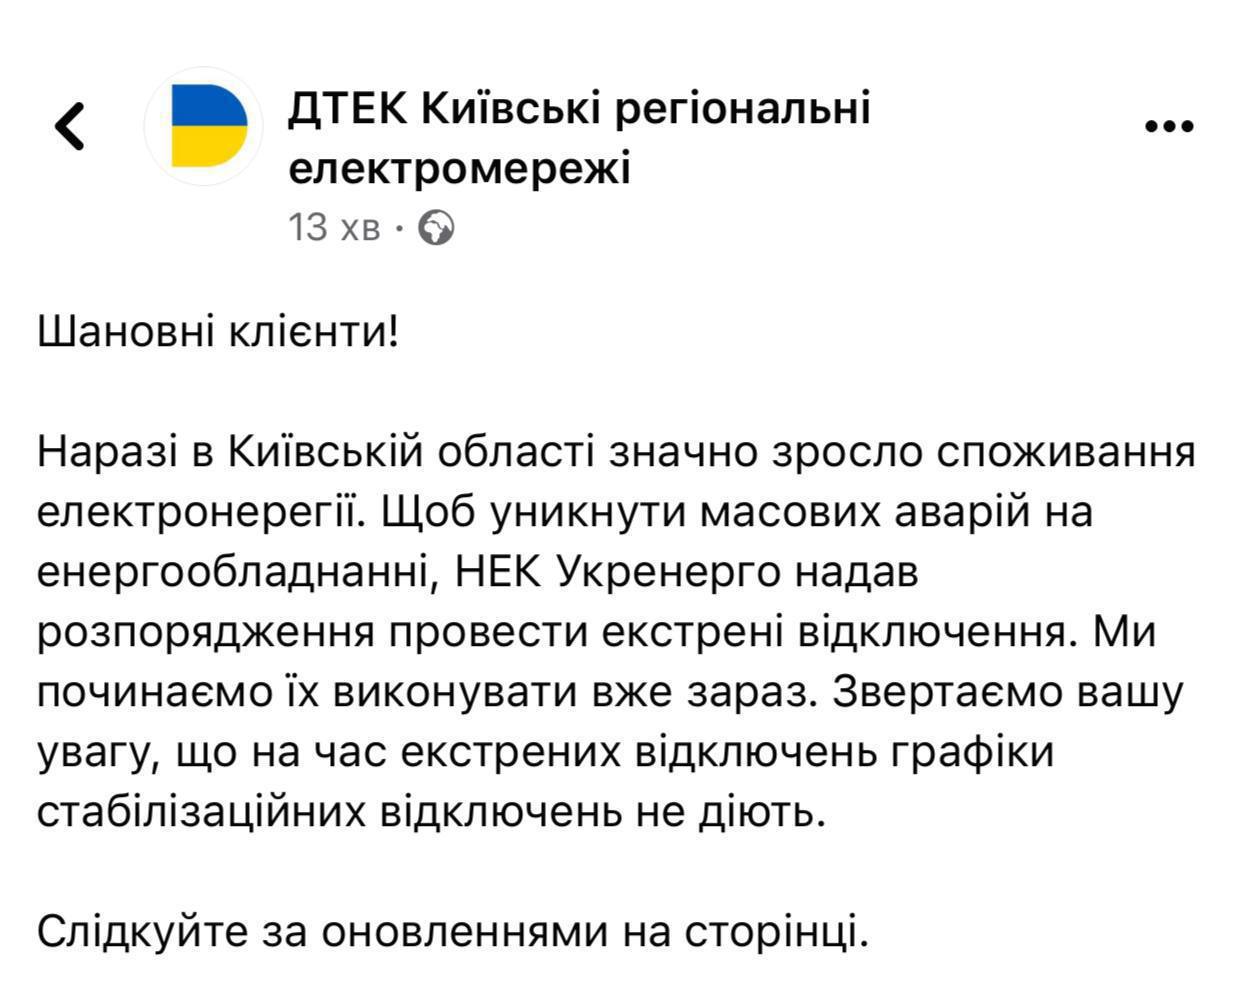 ДТЭК Киевских региональных электросетей сообщает о том, что в Киевской области вновь начались экстренные отключения электроэнергии